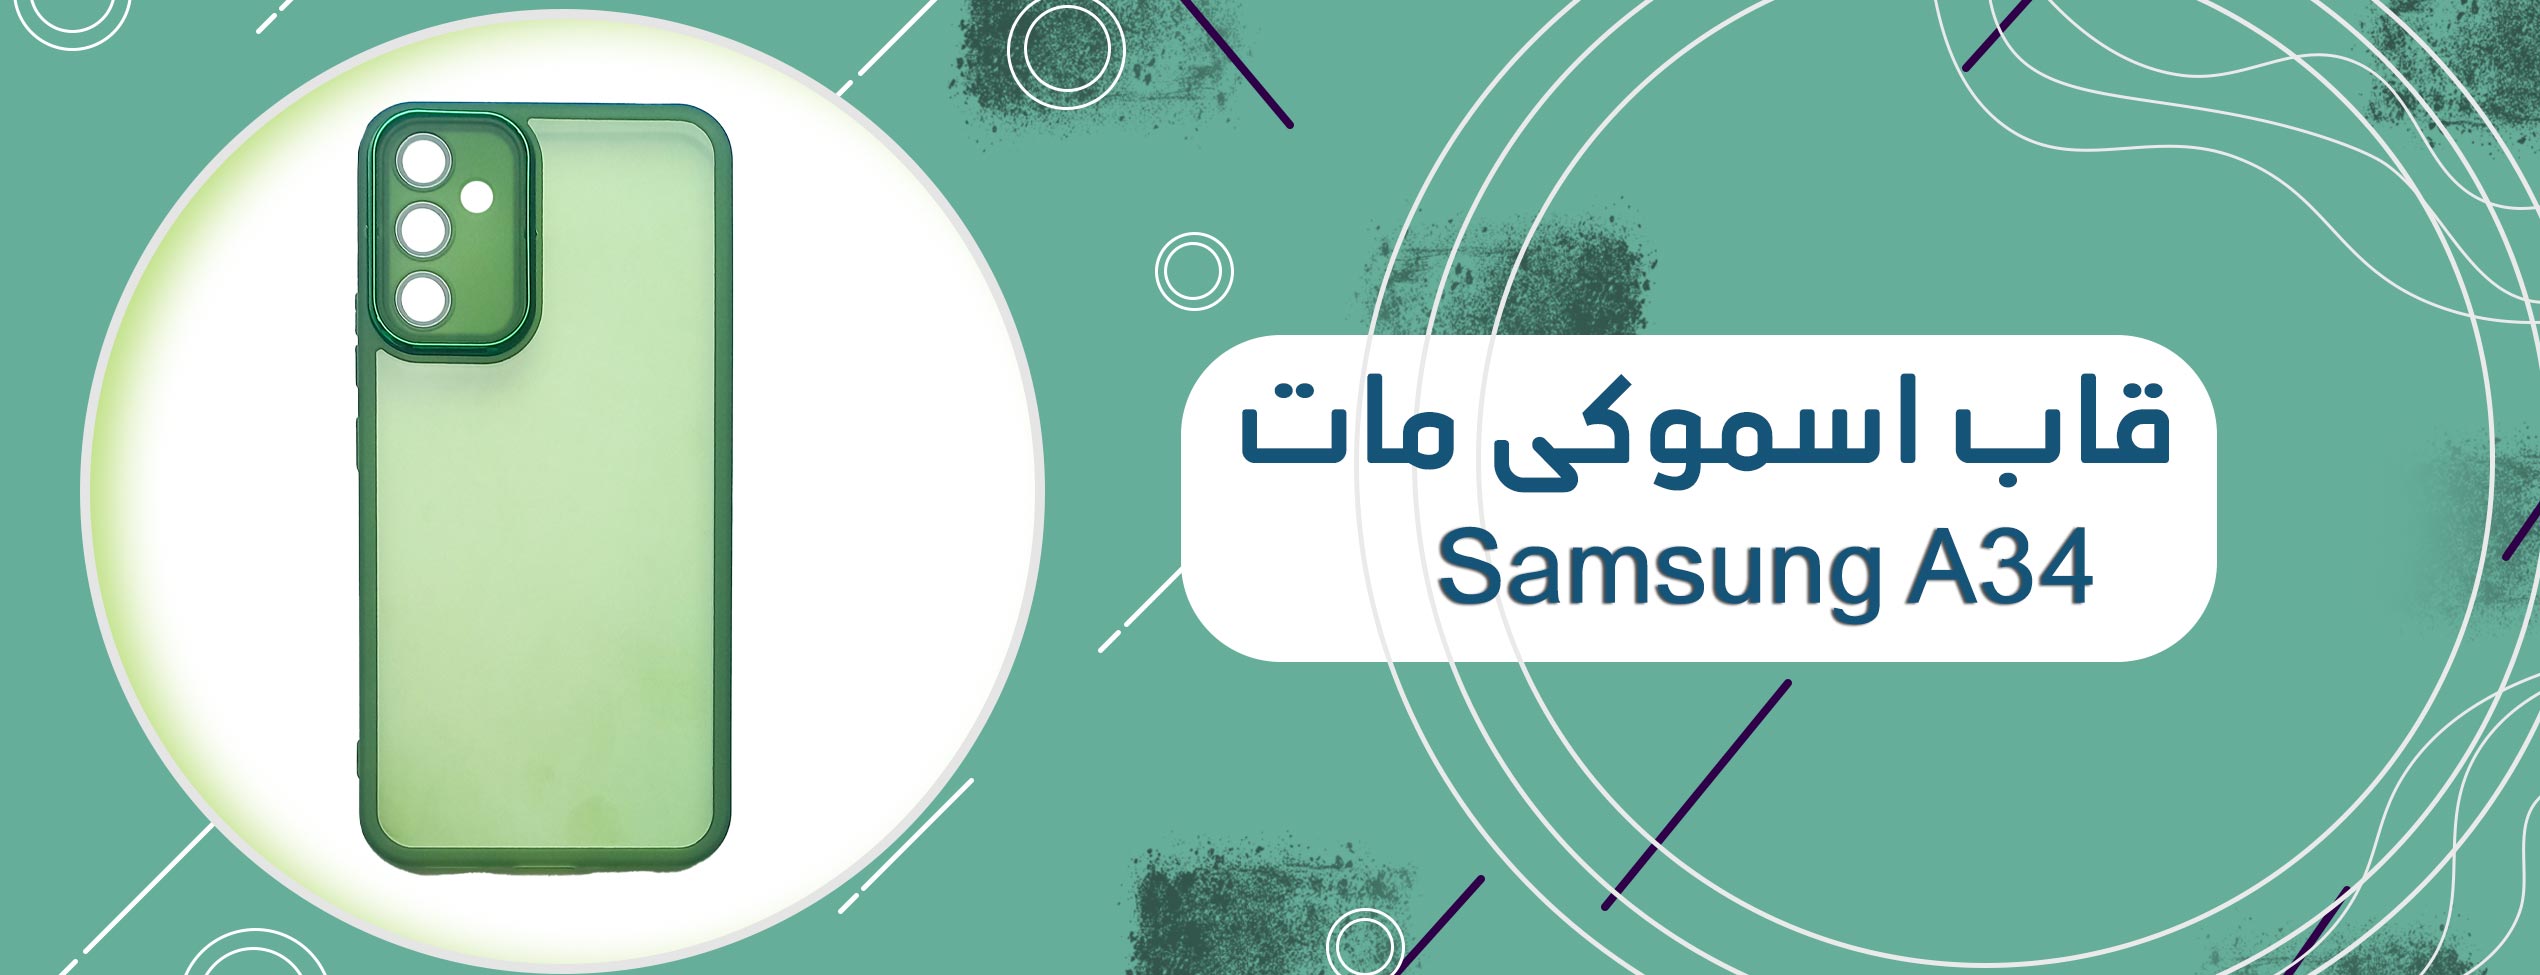 قاب اسموکی مات گوشی موبایل سامسونگ Samsung A34